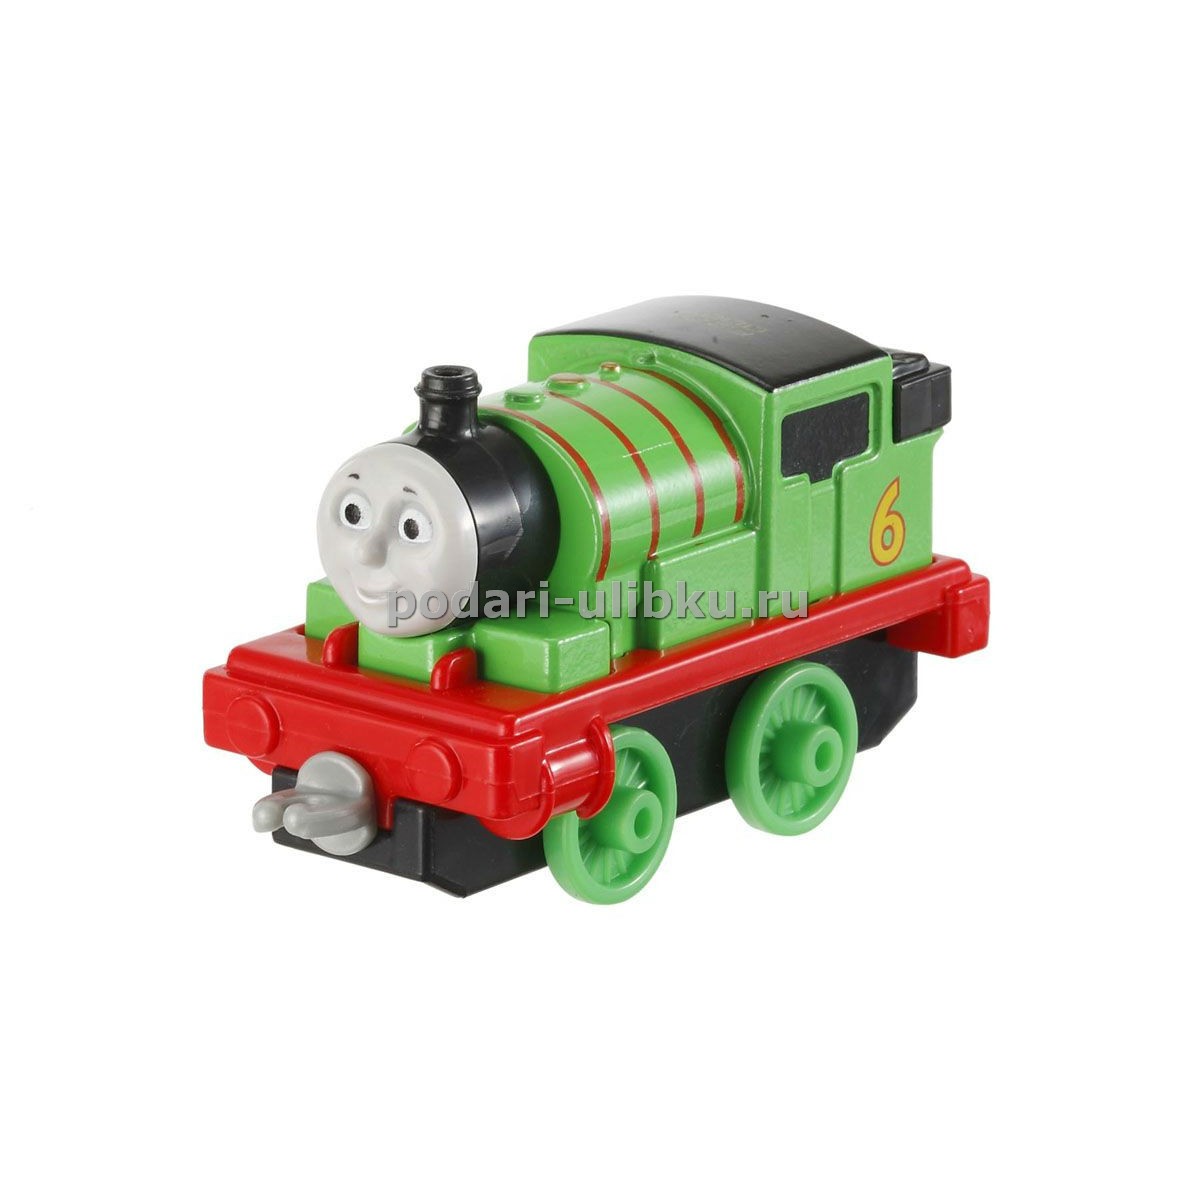 картинка Паровозик Перси серии "Томас и его друзья: Collectible Railway" — Подари Улыбку